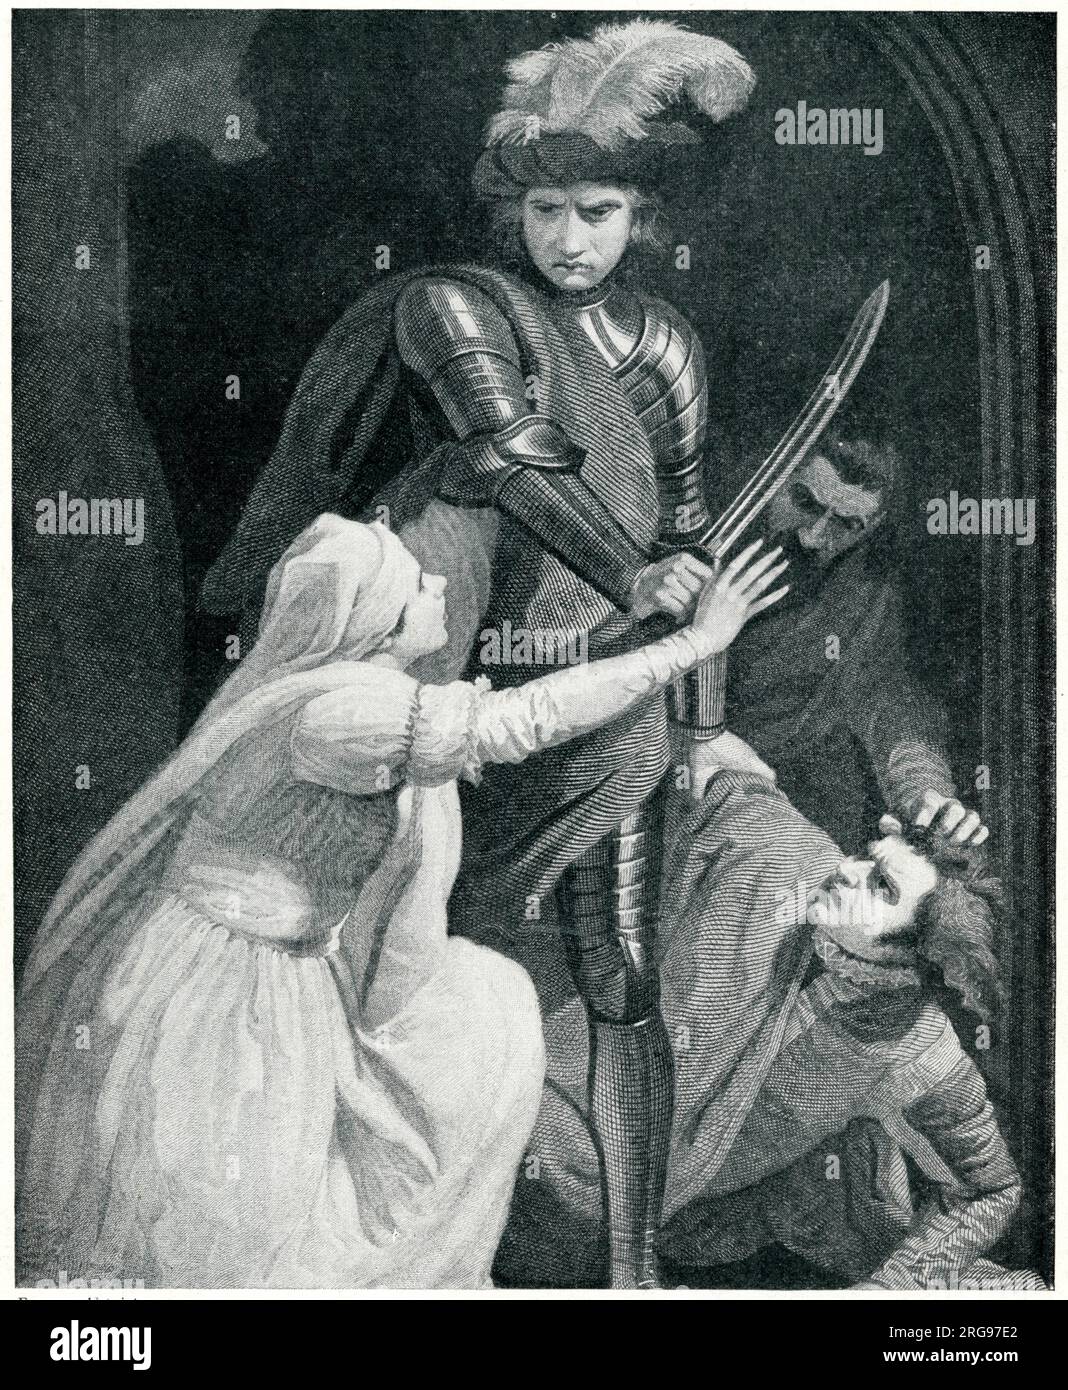 Arrestation de Roger Mortimer, 1e comte de March, au château de Nottingham, à la suite du meurtre du roi Édouard II (en 1327) et de la relation ultérieure de Mortimer avec la reine Isabelle au cours de laquelle ils sont devenus conjointement dirigeants de l'Angleterre. Mortimer a ensuite été pendu. Banque D'Images